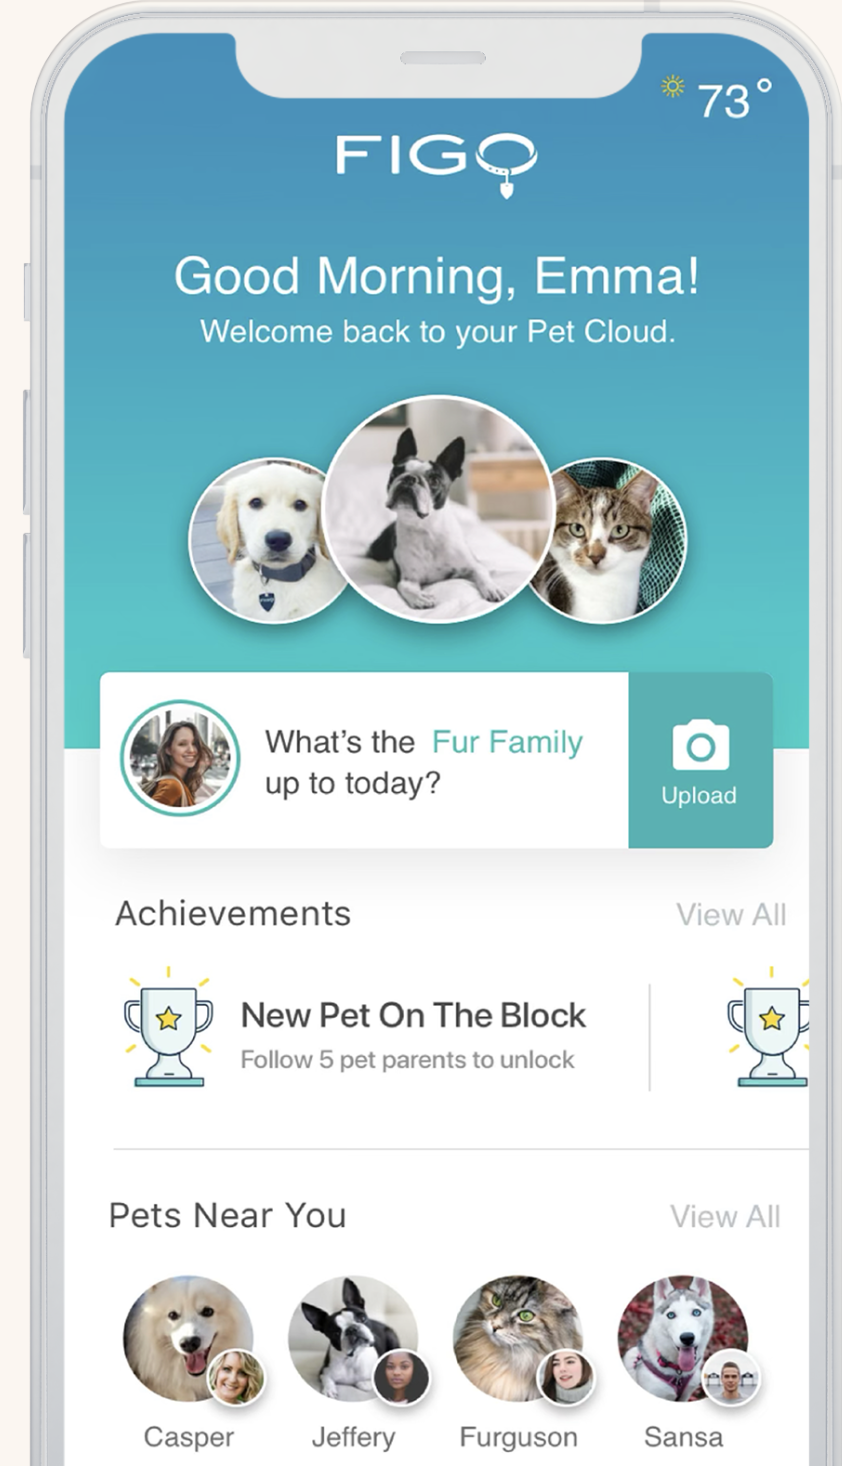 Image of Figo Pet Cloud app home screen